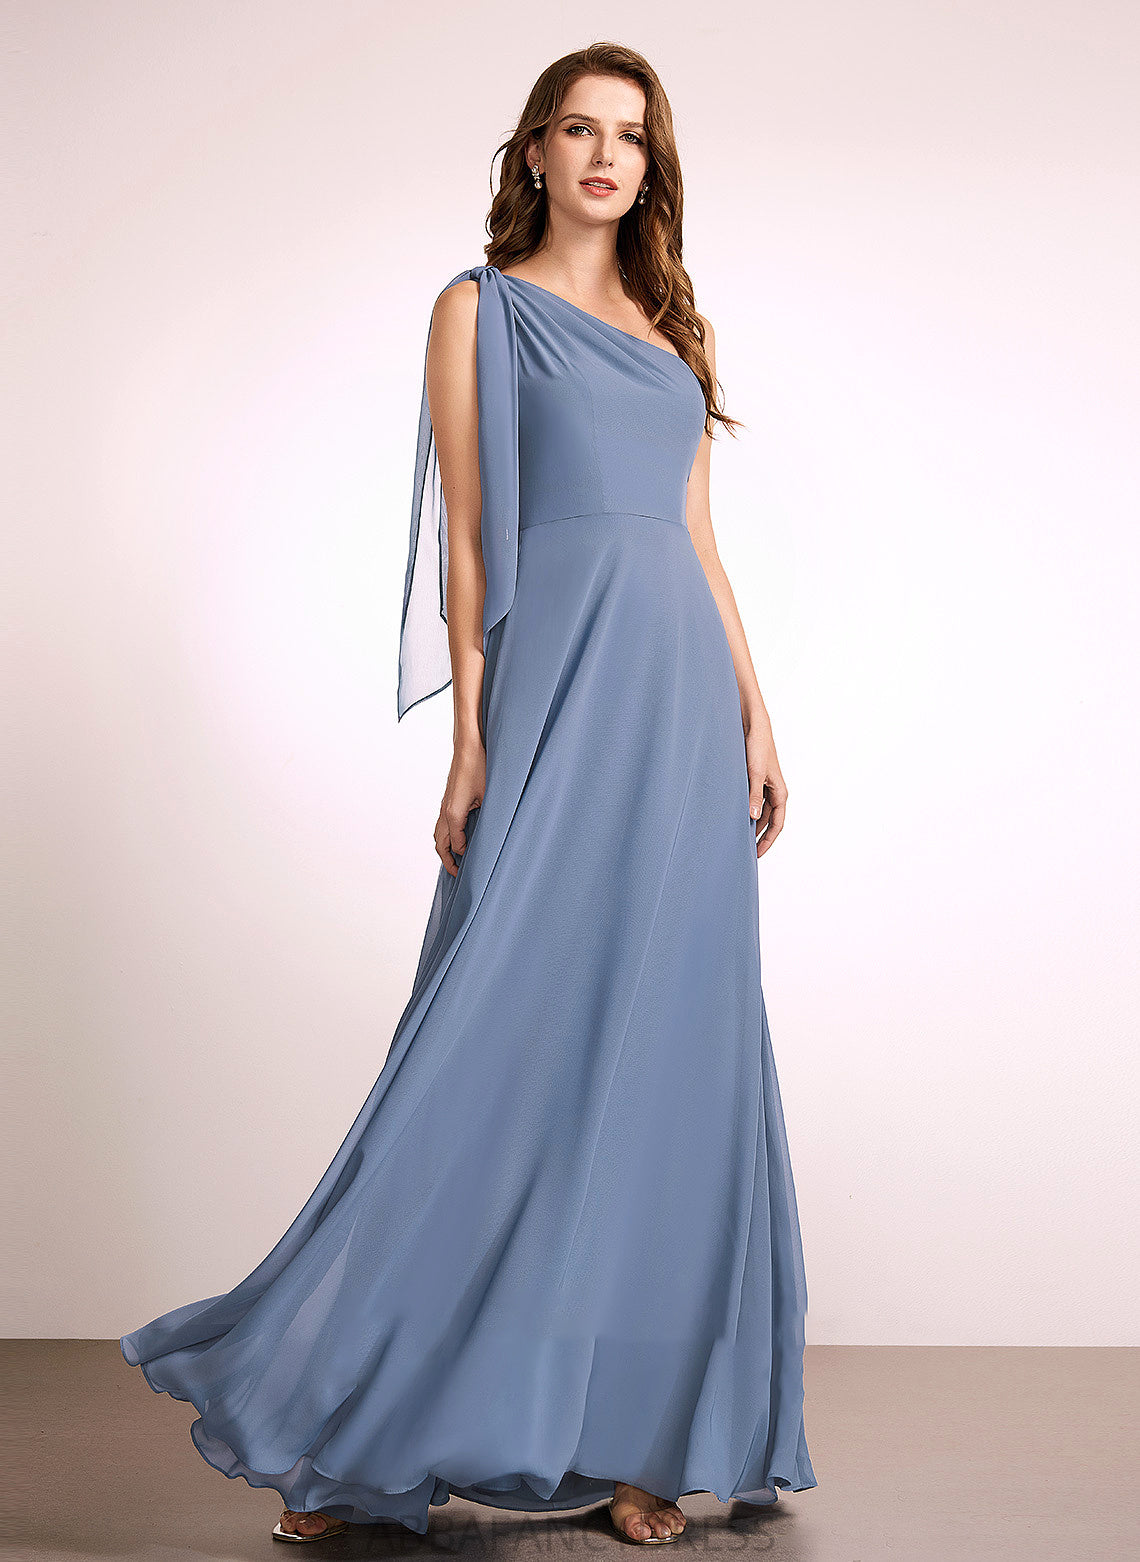 Bow(s) Silhouette Floor-Length Length Fabric A-Line Embellishment One-Shoulder Neckline Alina A-Line/Princess Natural Waist